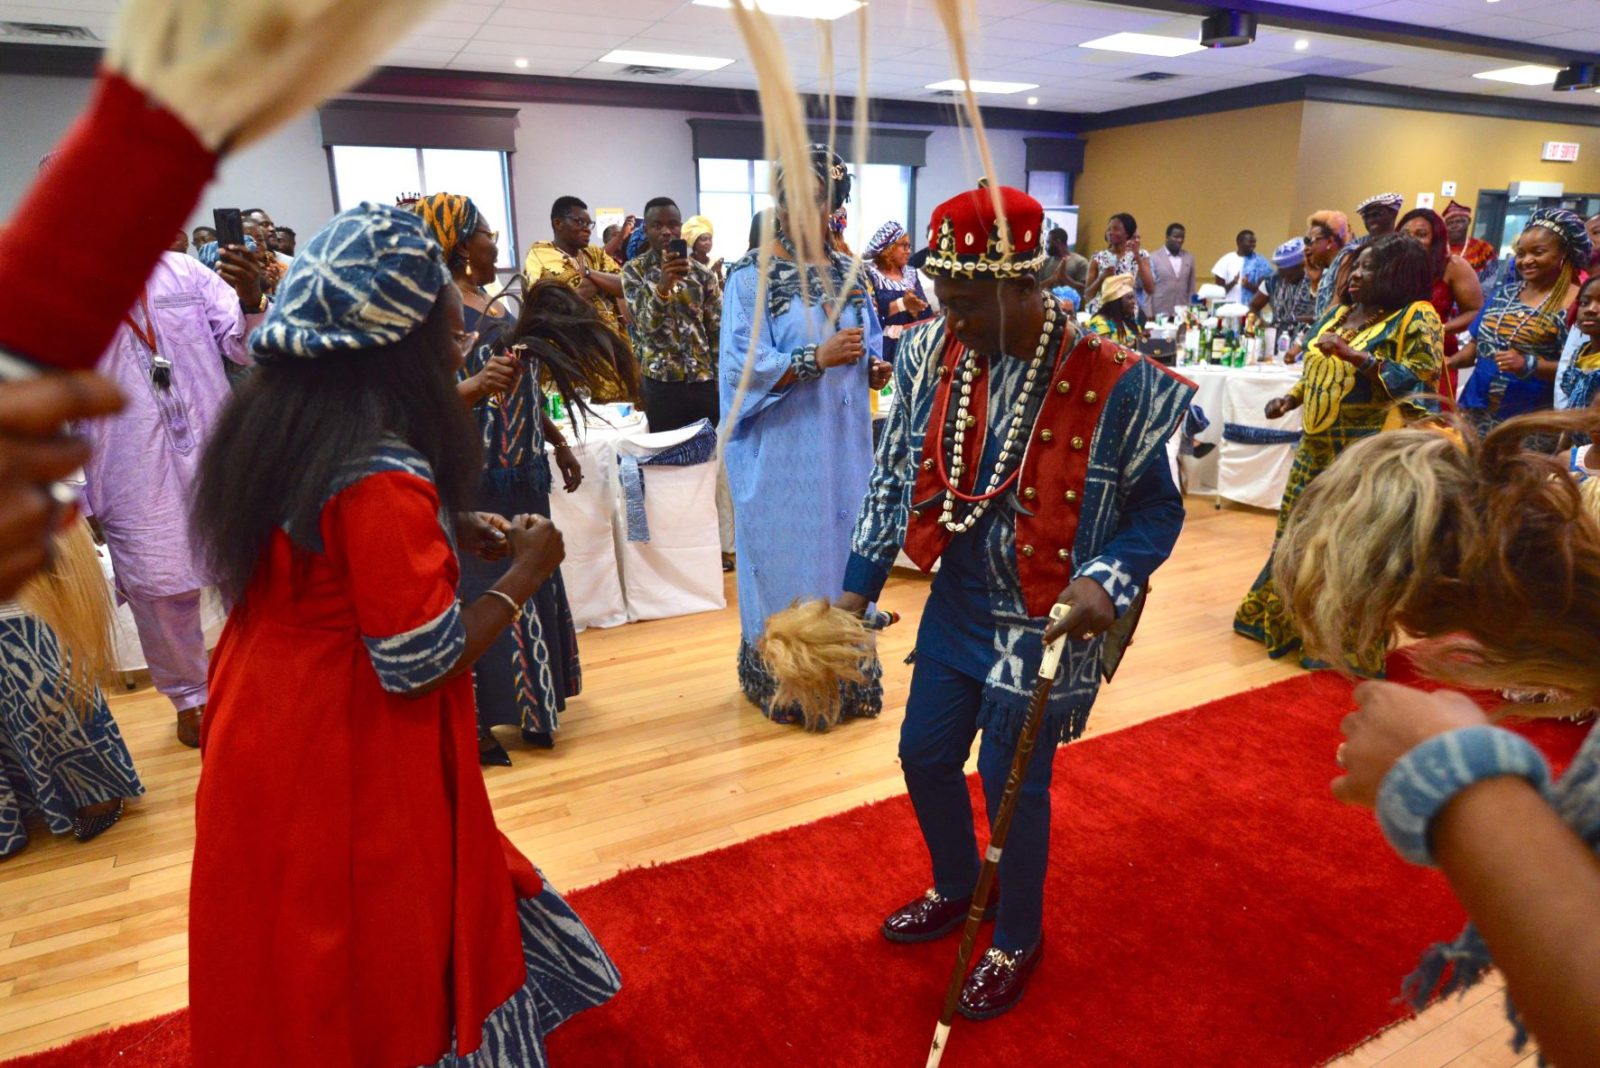 Un Canadien d’origine camerounaise partage un prix royal avec sa communauté